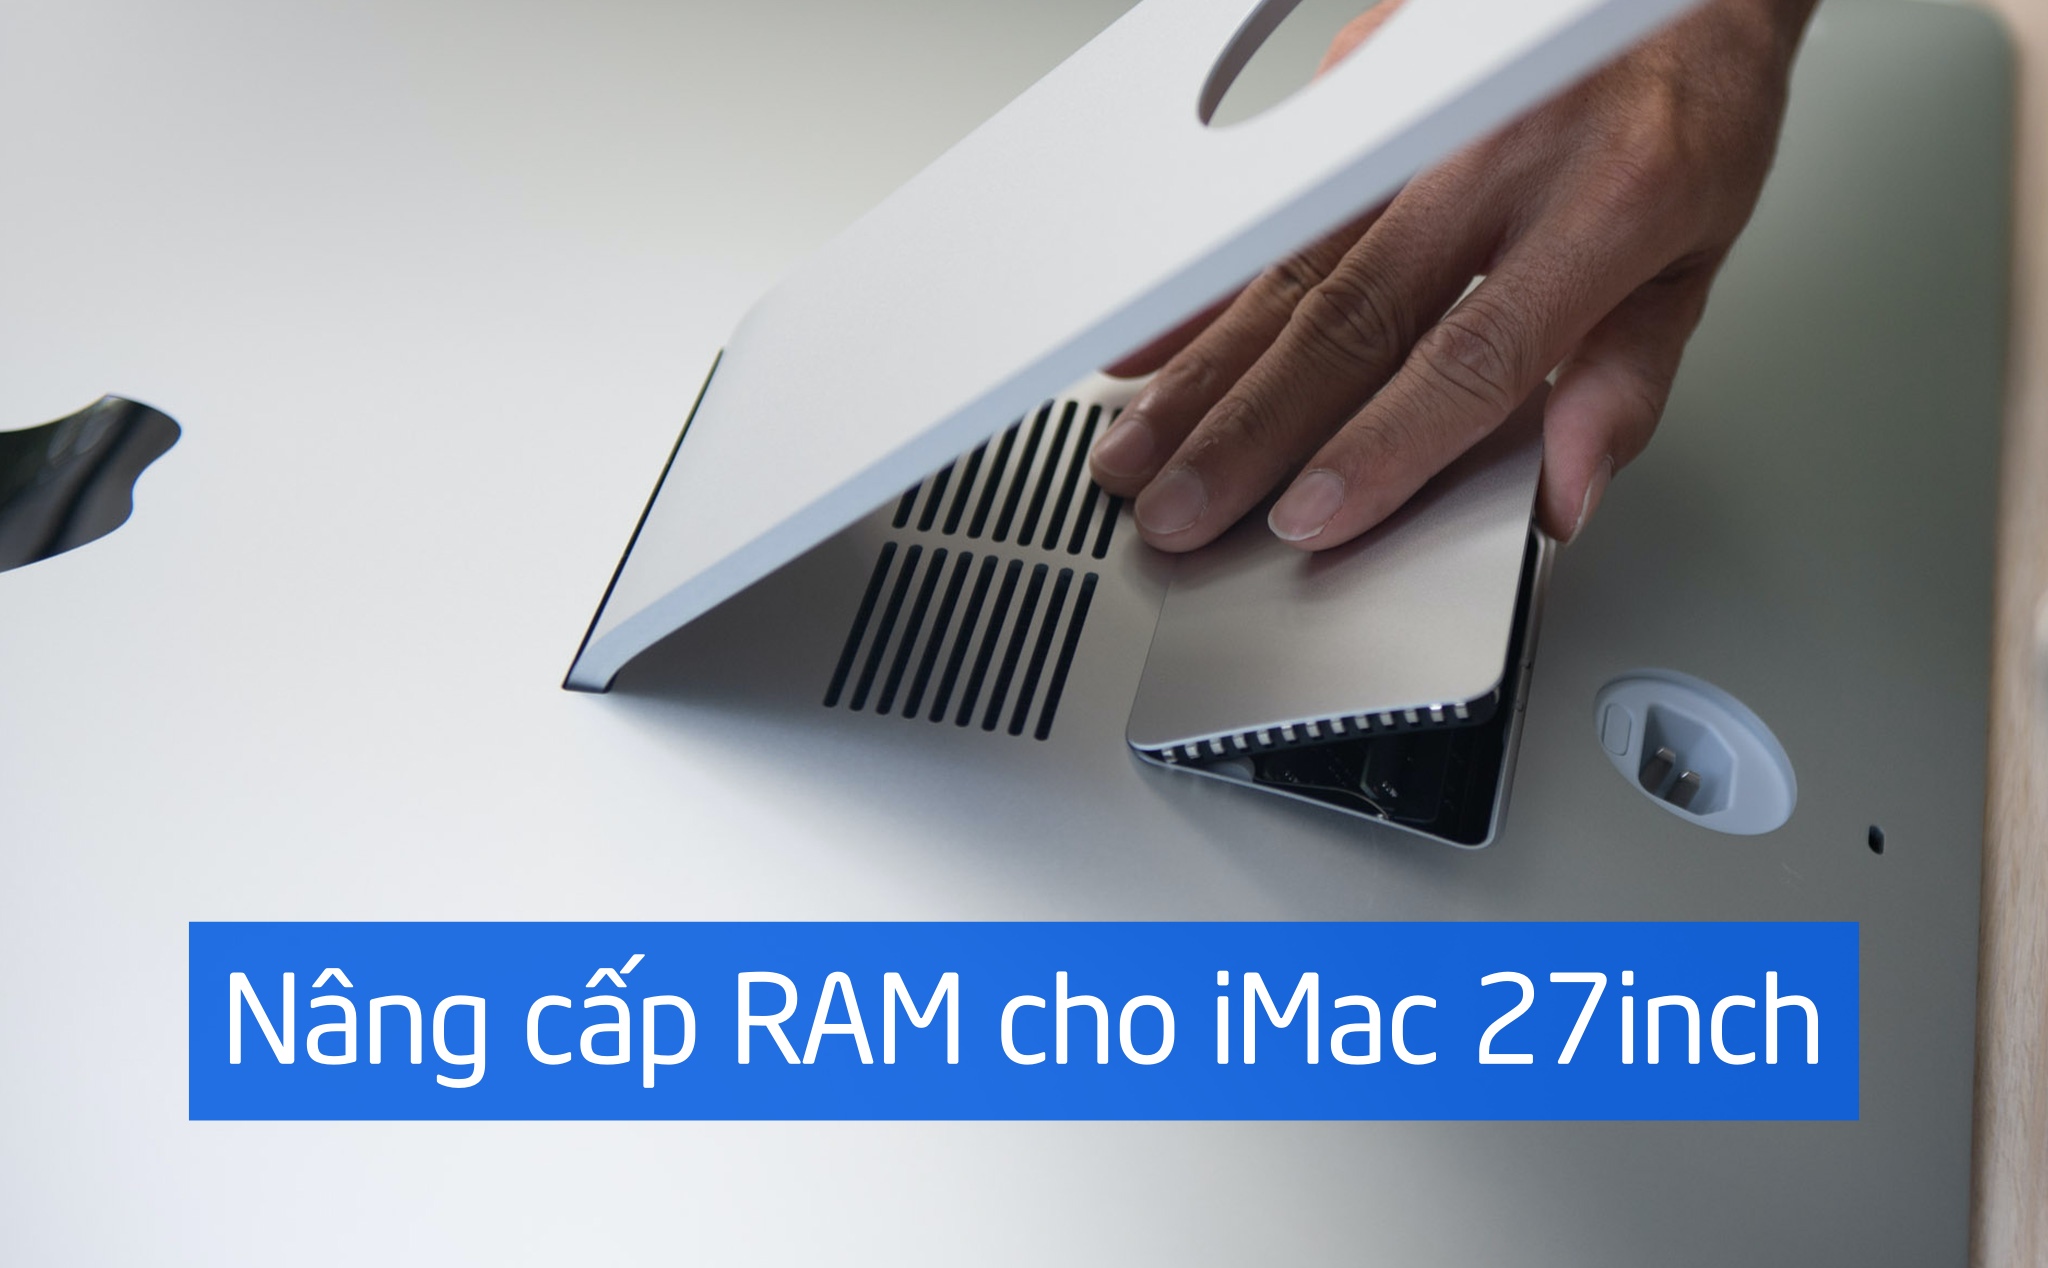 Hướng dẫn nâng cấp RAM cho iMac 27inch, tự làm ở nhà cự kỳ dễ dàng